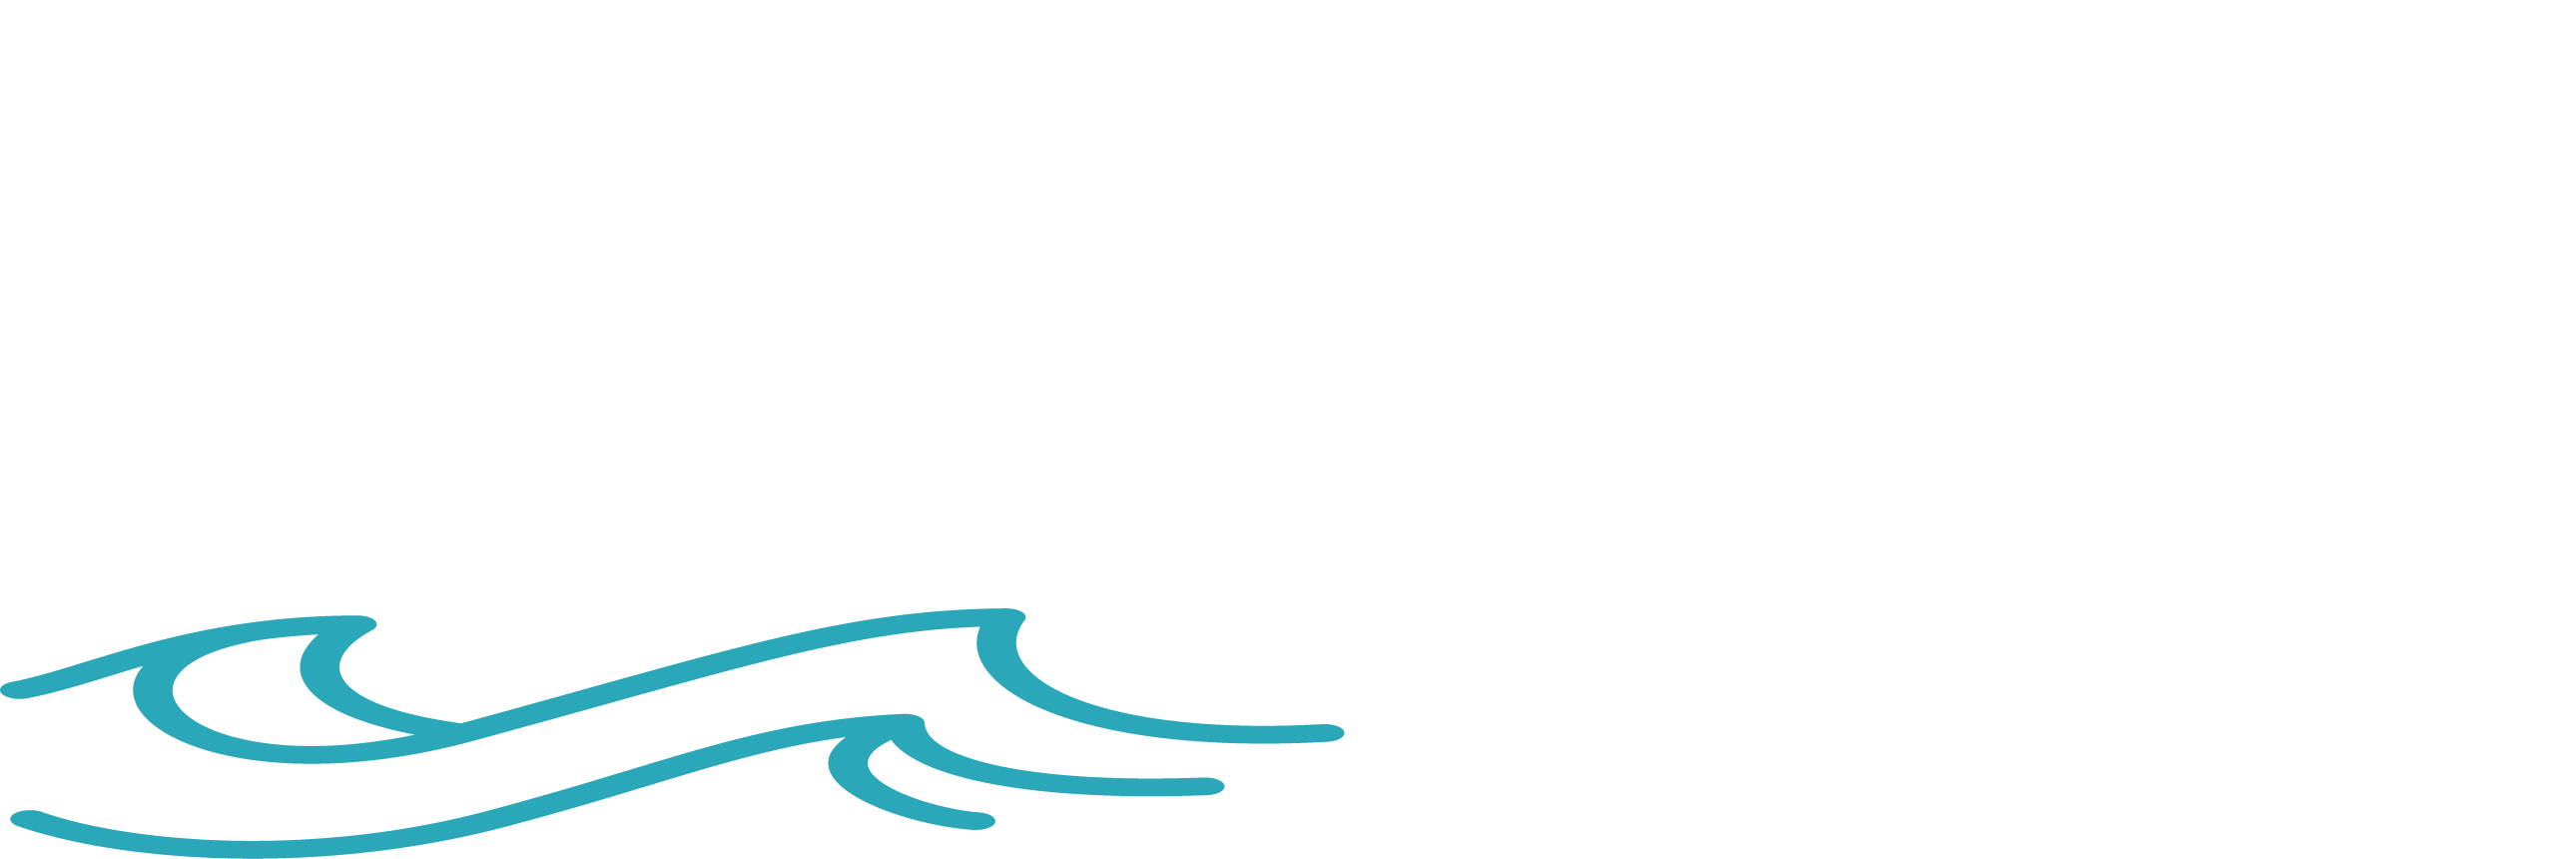 Basta Boatlifts - Home